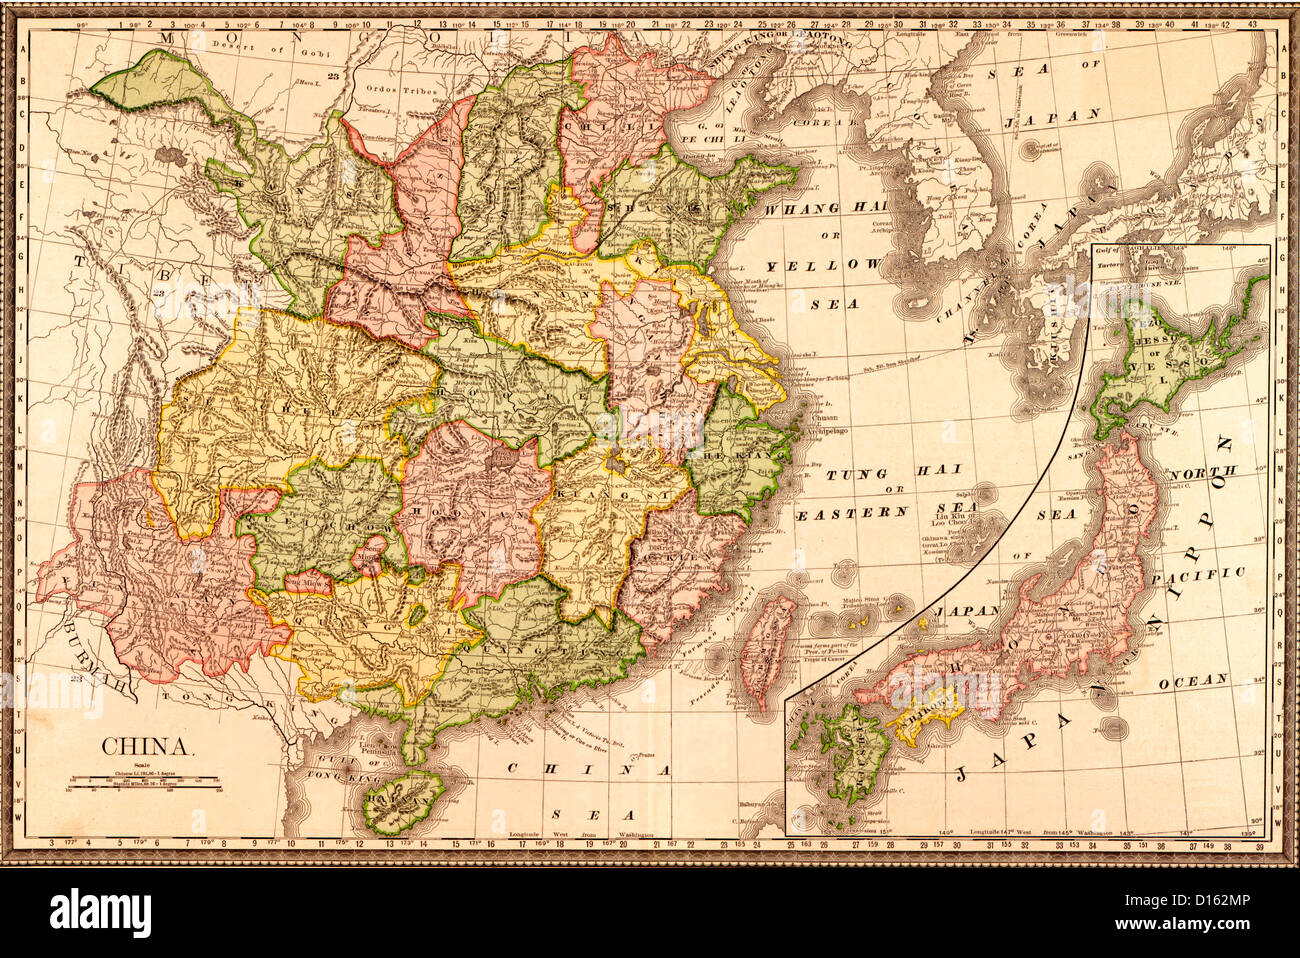 China Map - Rand McNally and Company 1883 Stock Photo